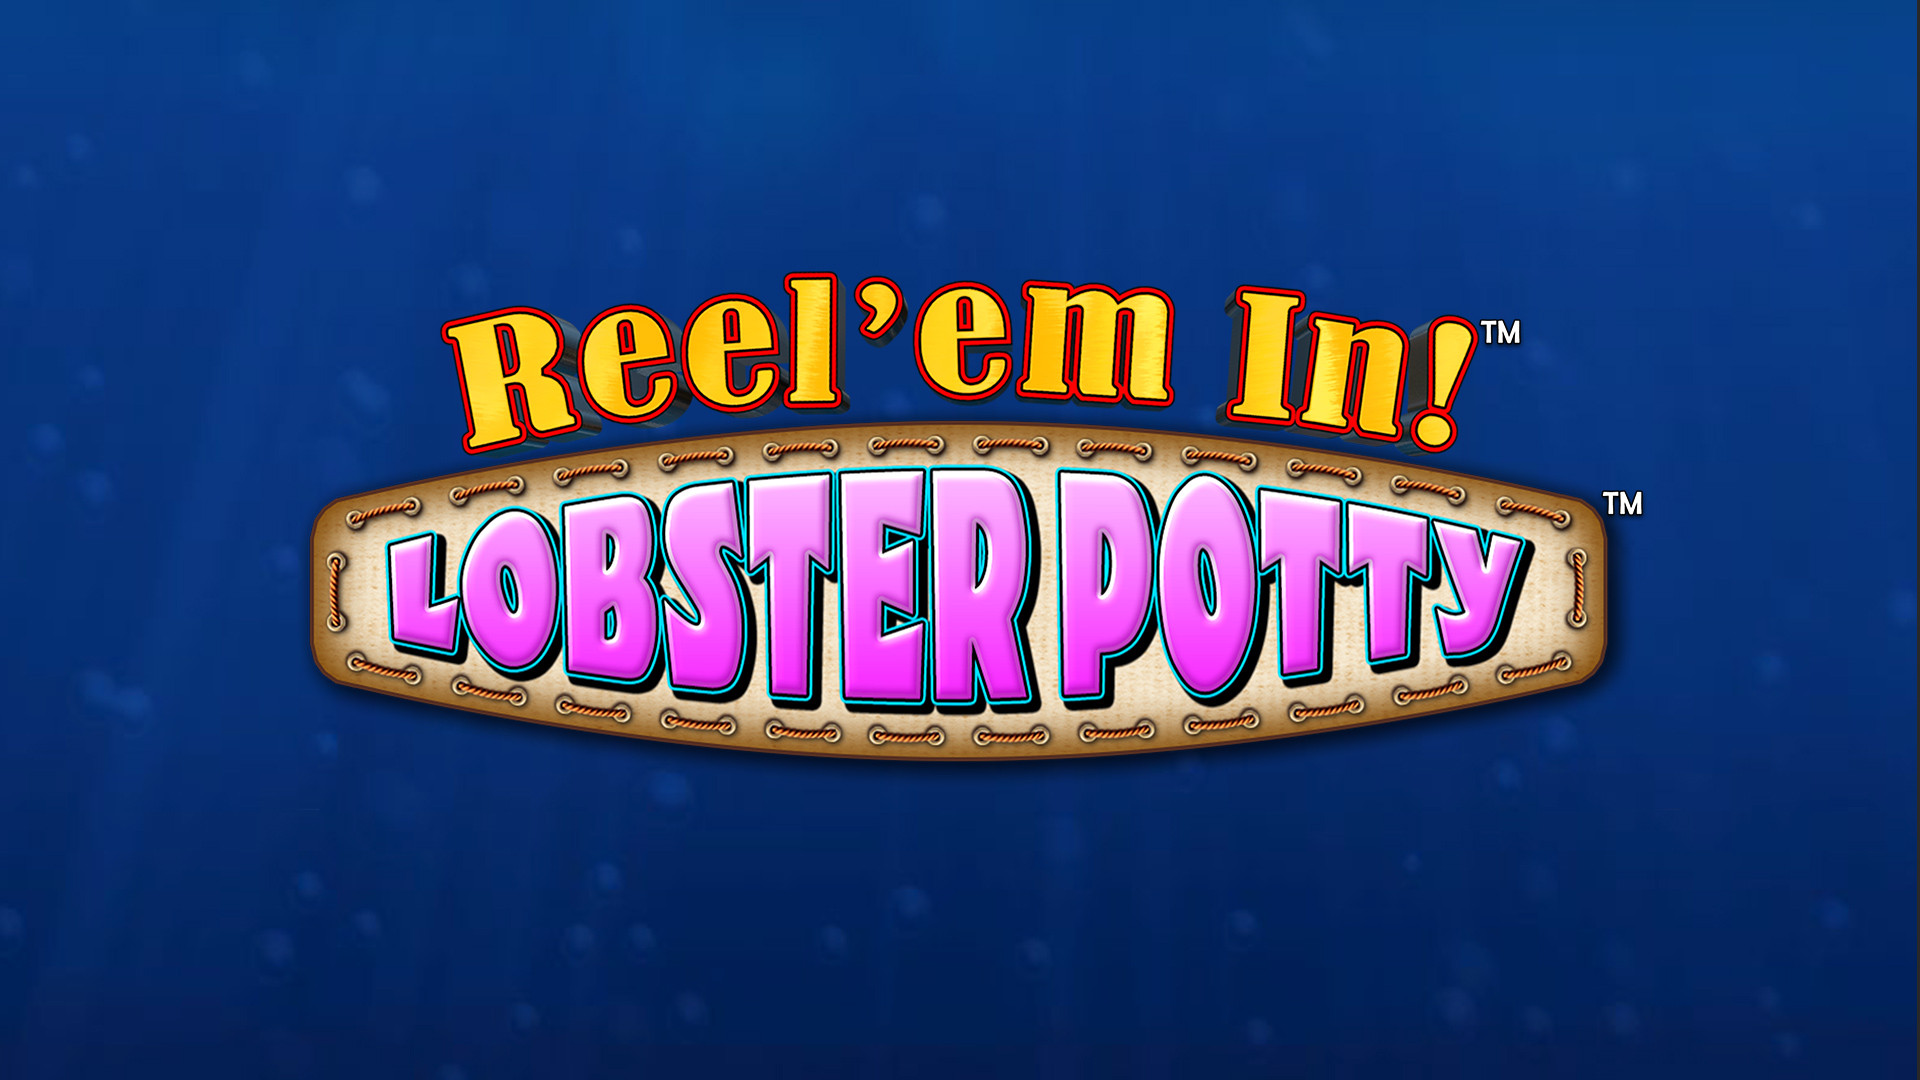 Reel' em In Lobster Potty